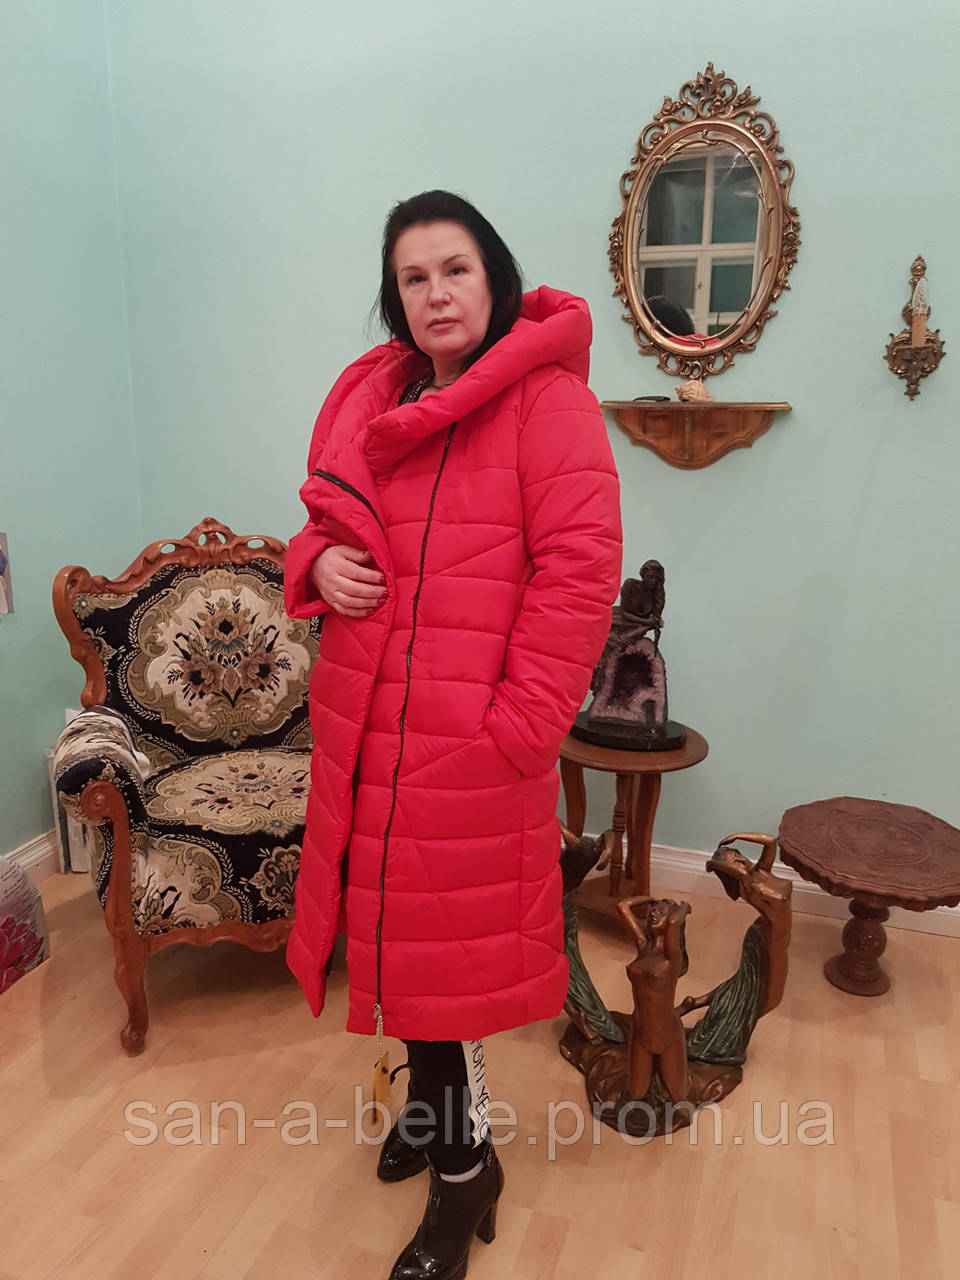 Жіноча зимова куртка Пуховик Ковдра, розміри від 46 до 72